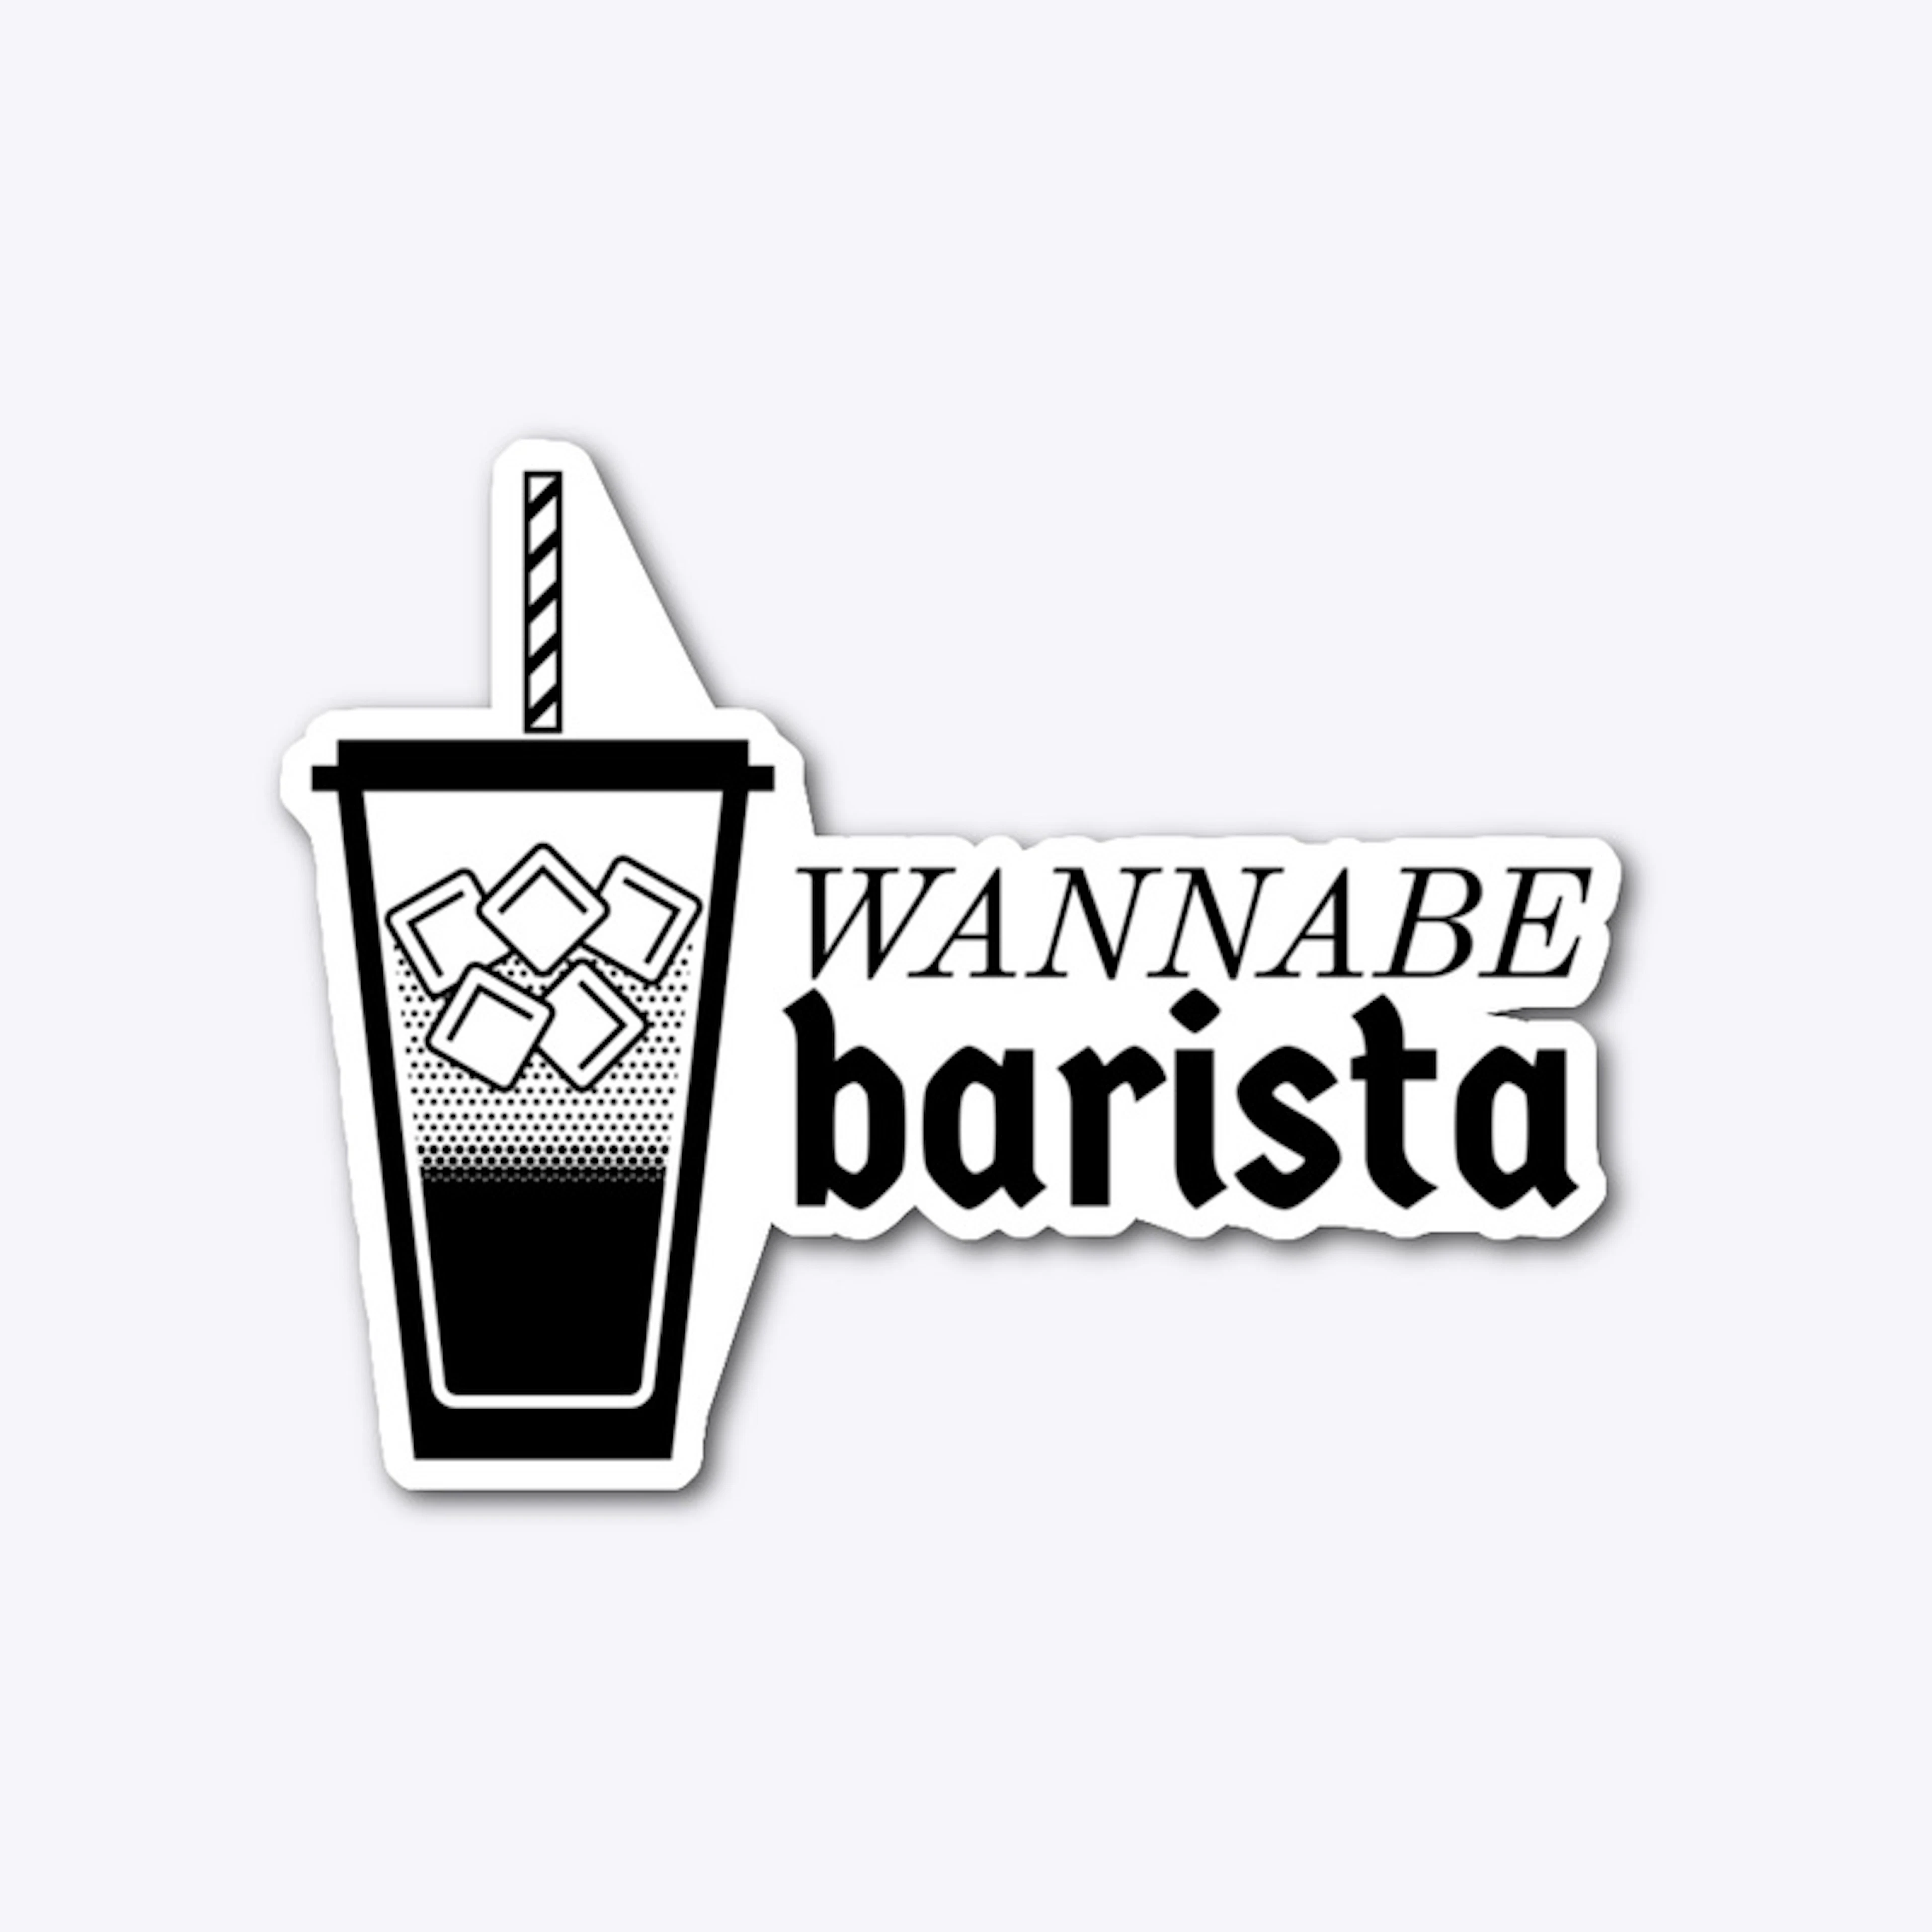 Wannabe Barista